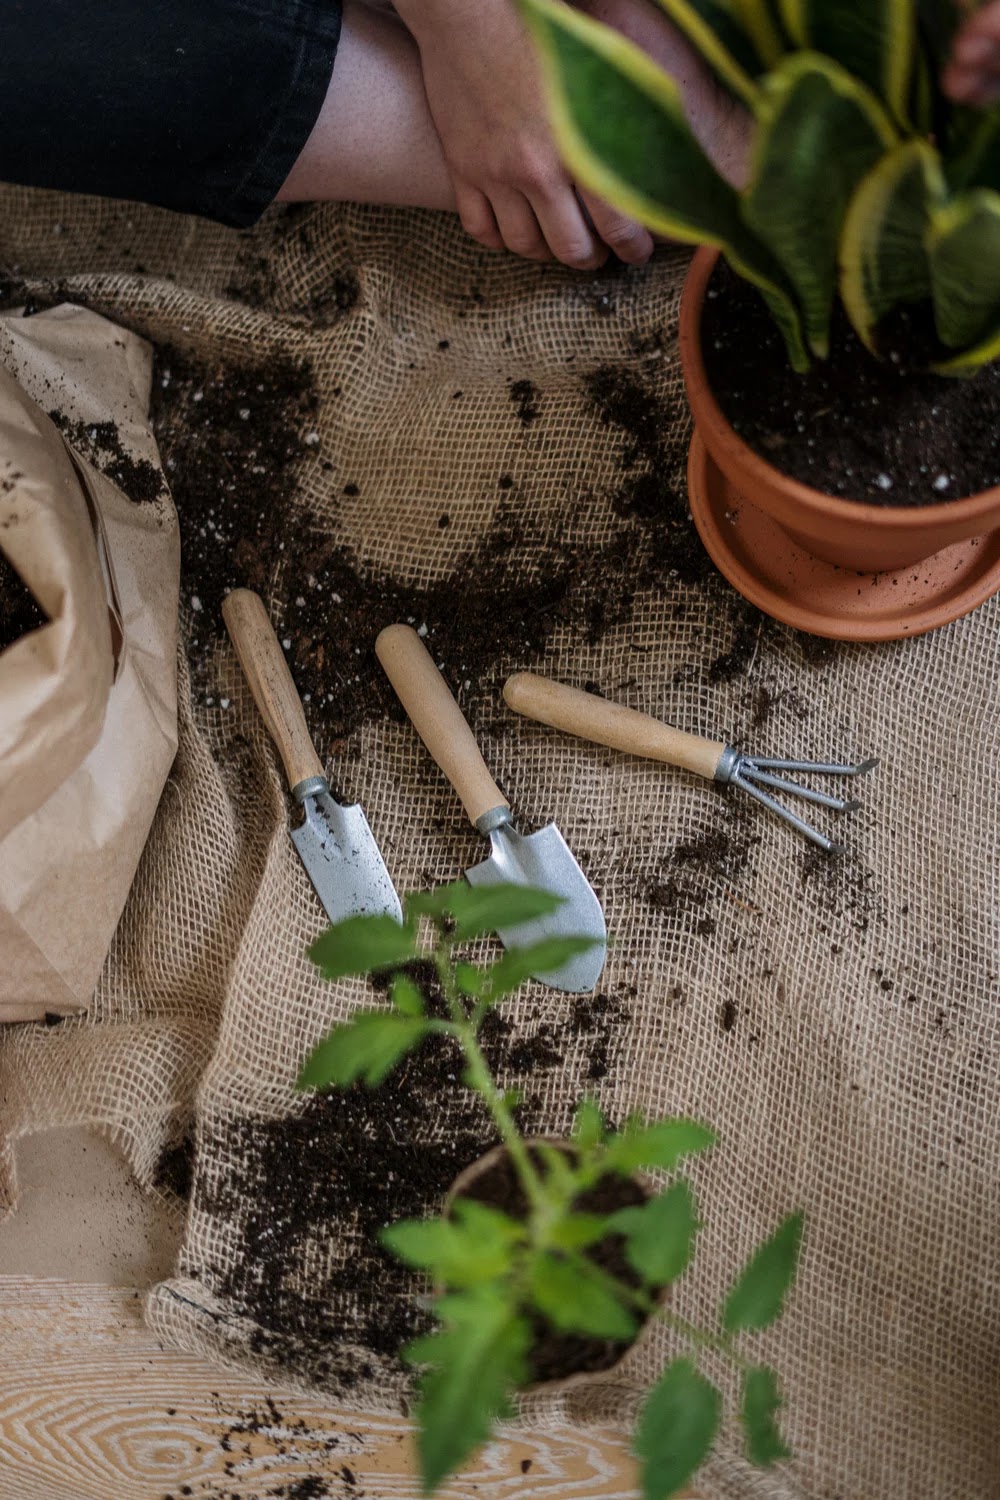 reducir el plástico en el jardín utilizando tejidos y herramientas de materiales naturales